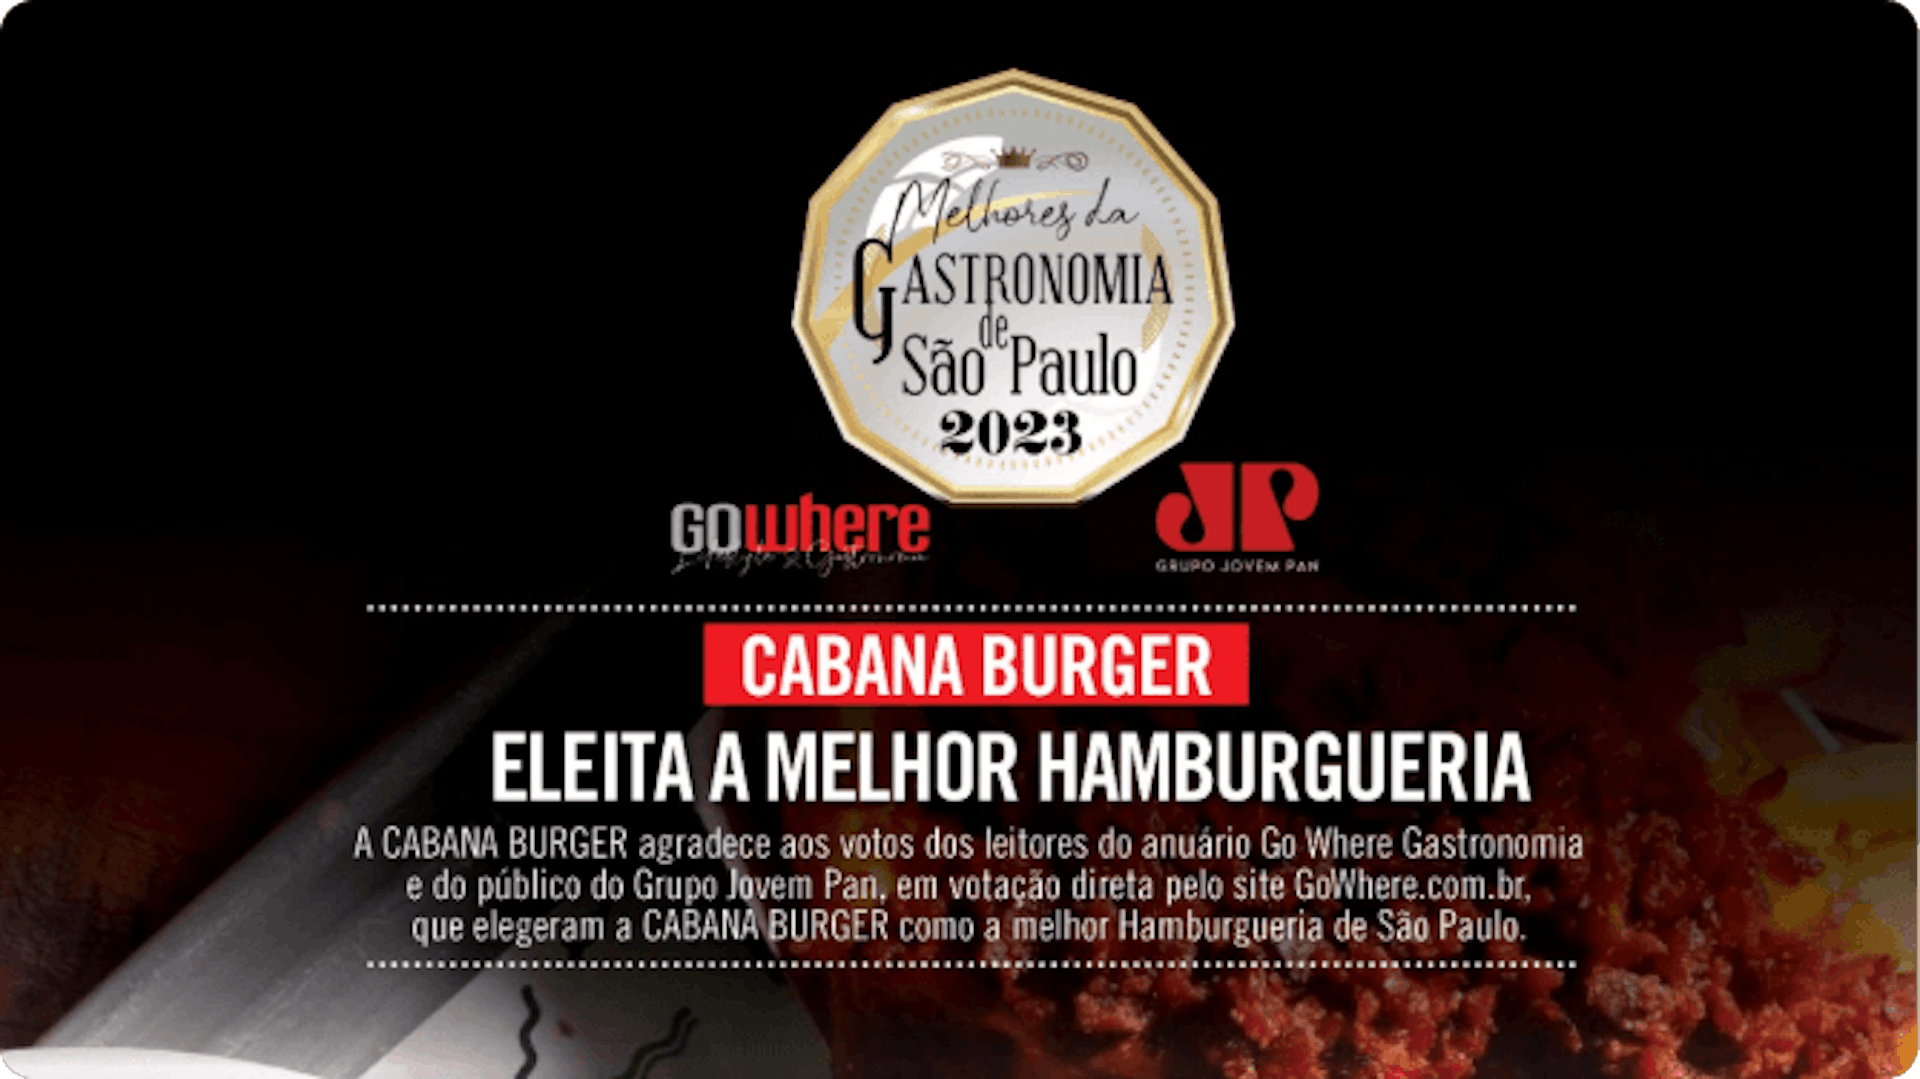 Melhores da Gastronomia de São Paulo 2023 - A Cabana Burger agradece aos votos dos leitores do anuário Go Where Gastronomia e do público do Grupo Jovem Pan. Em votação direta pelo site gowhere.com.br